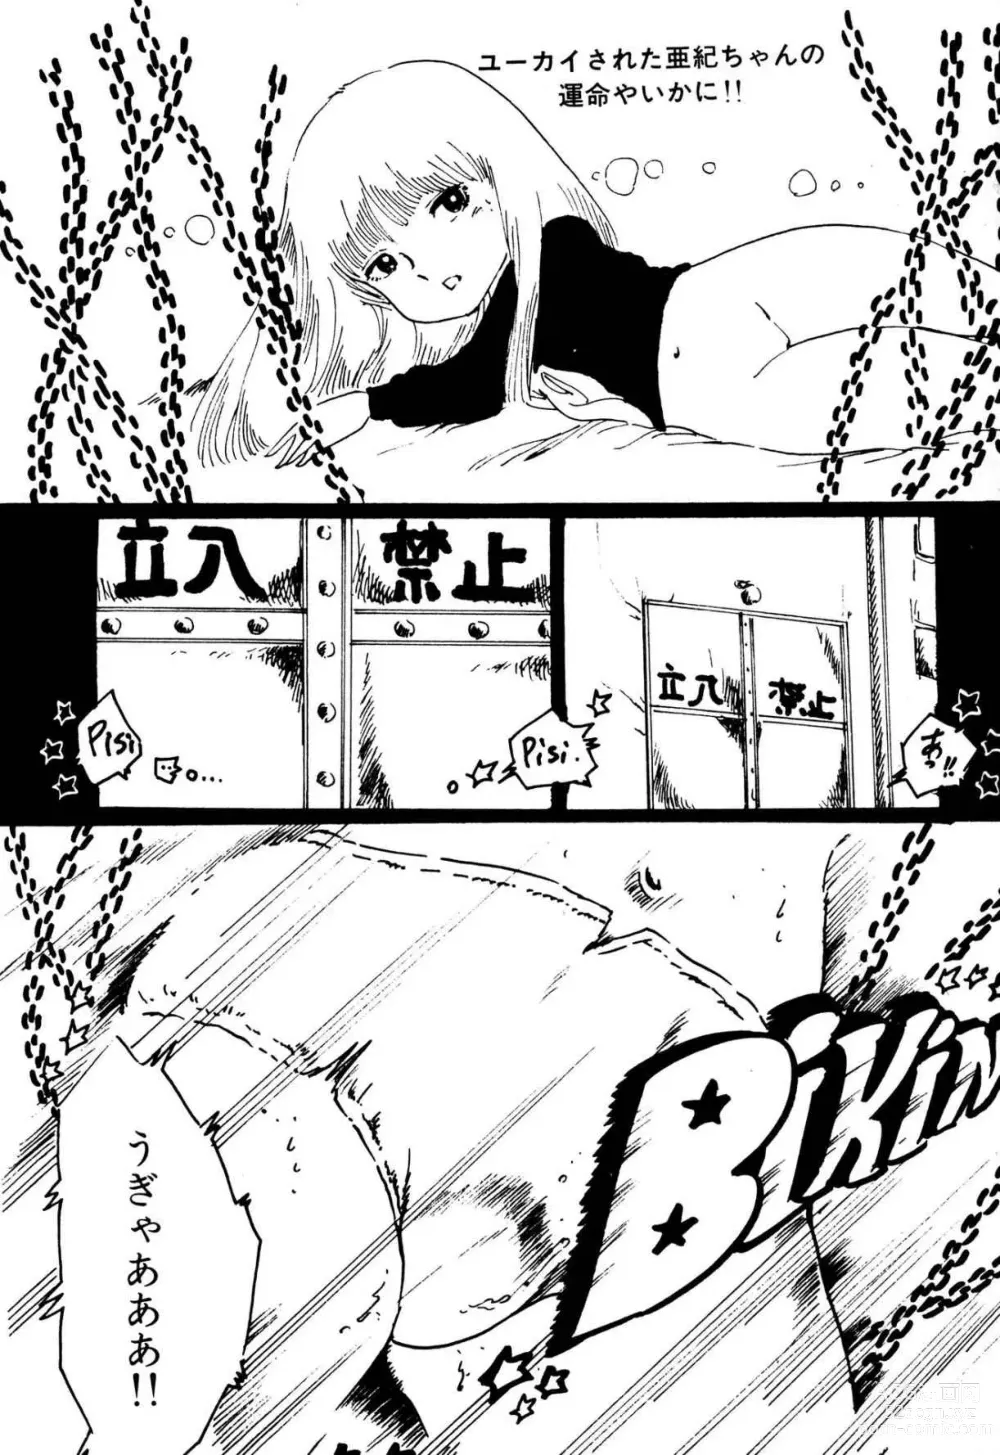 Page 194 of manga Koisuru Yousei